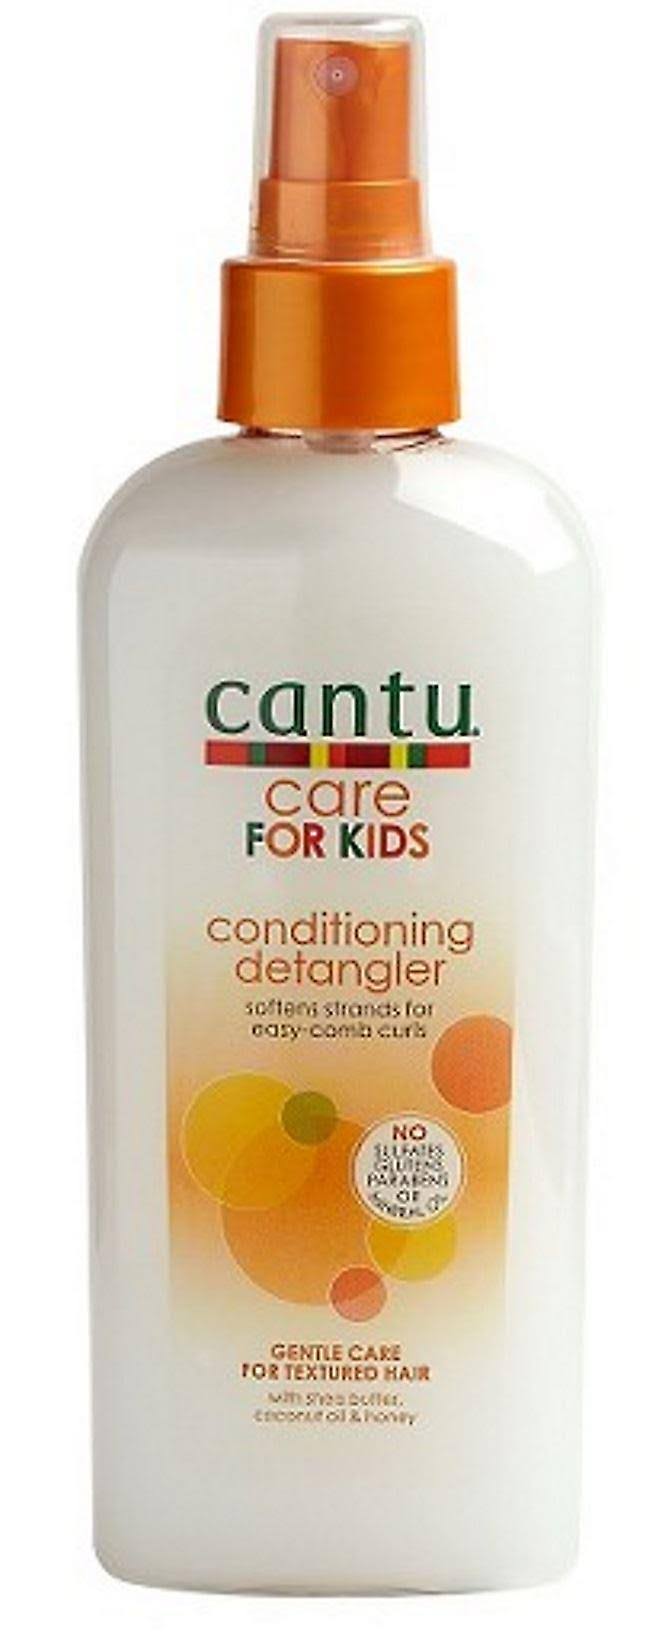 Cantu Care for Kids Conditioning Detangler Spray - 6oz